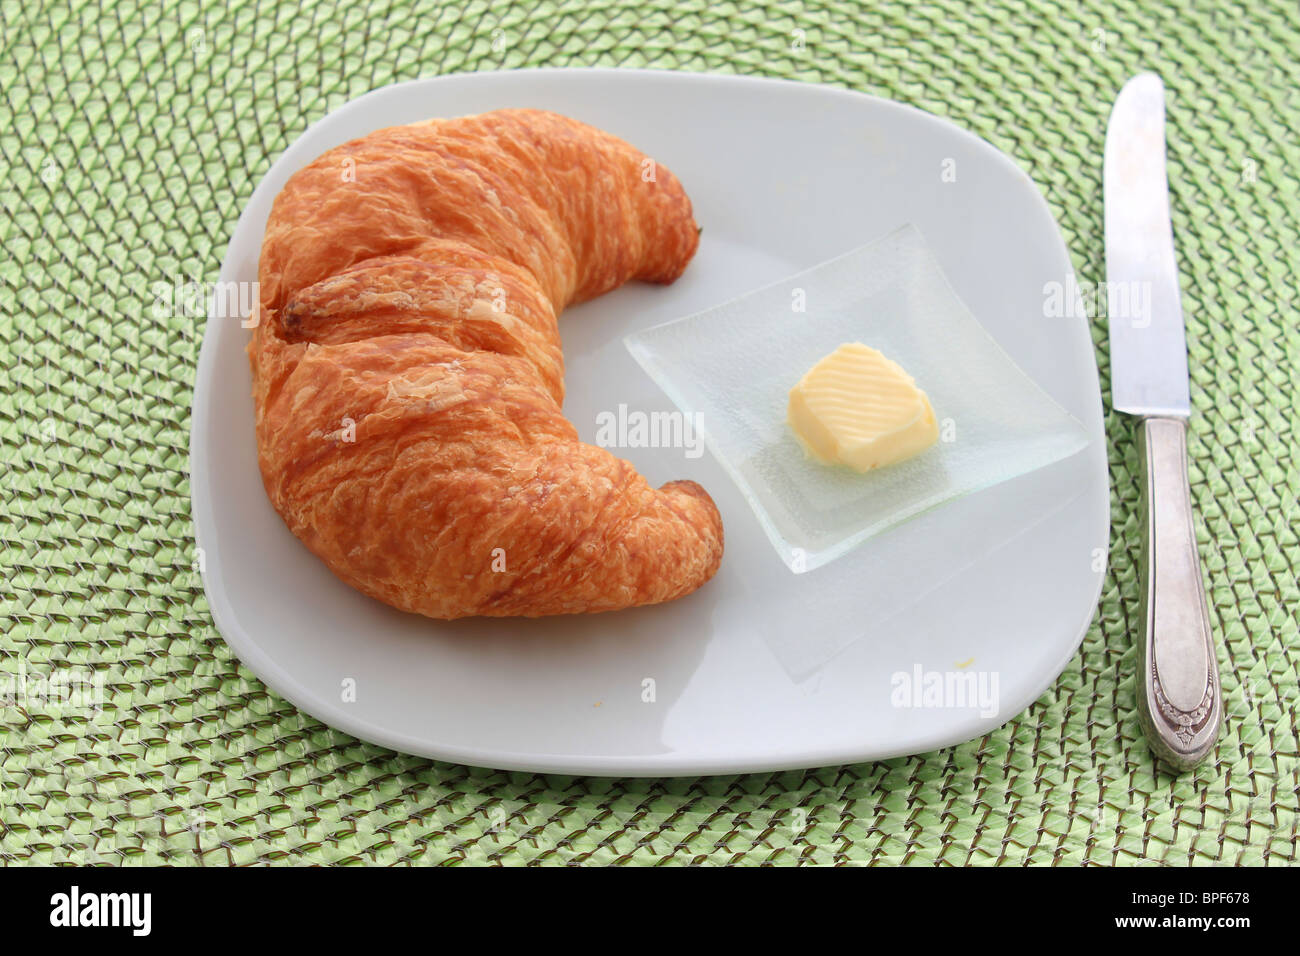 Le croissant d'or à tranche d'orange sur une assiette blanche avec un couteau et une pointe de beurre sur un napperon en rotin vert Banque D'Images